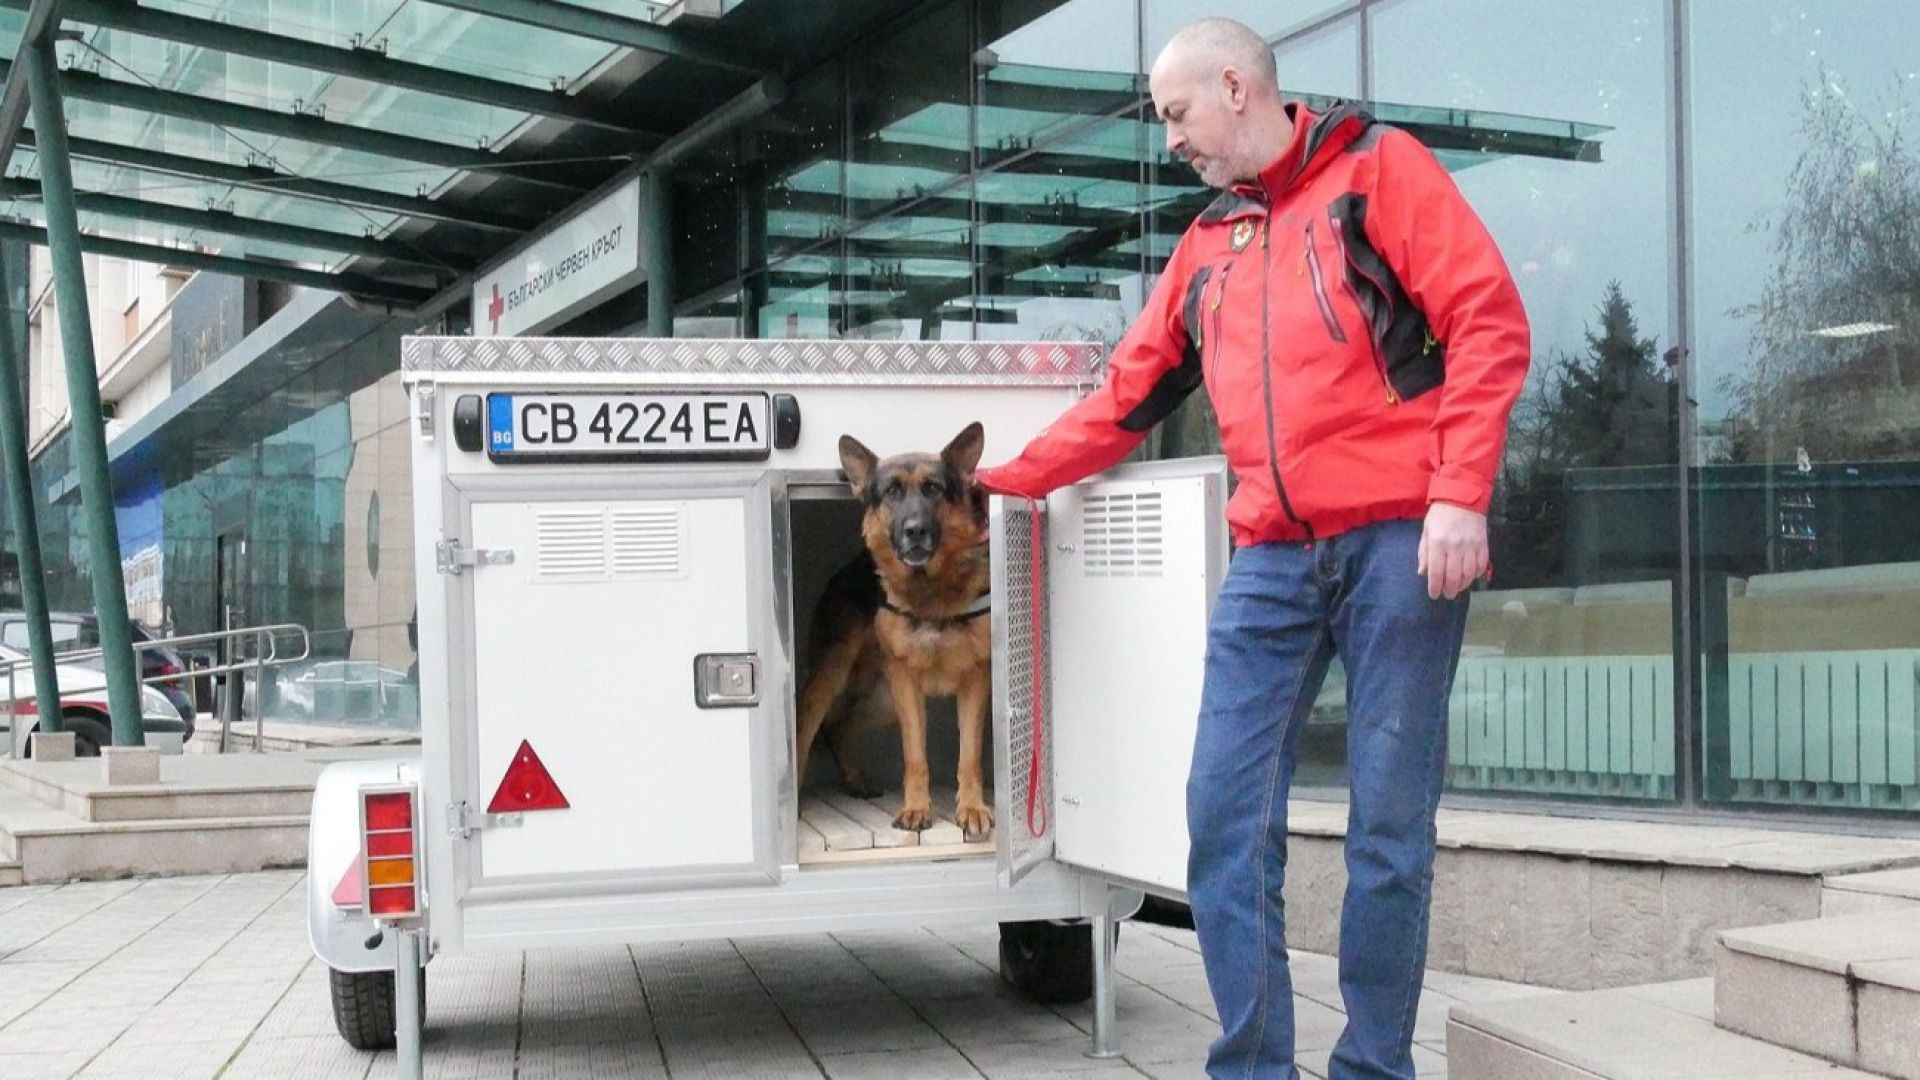 Кампанията "Избери, за да помогнеш" осигури ремаркета за кучета на БЧК